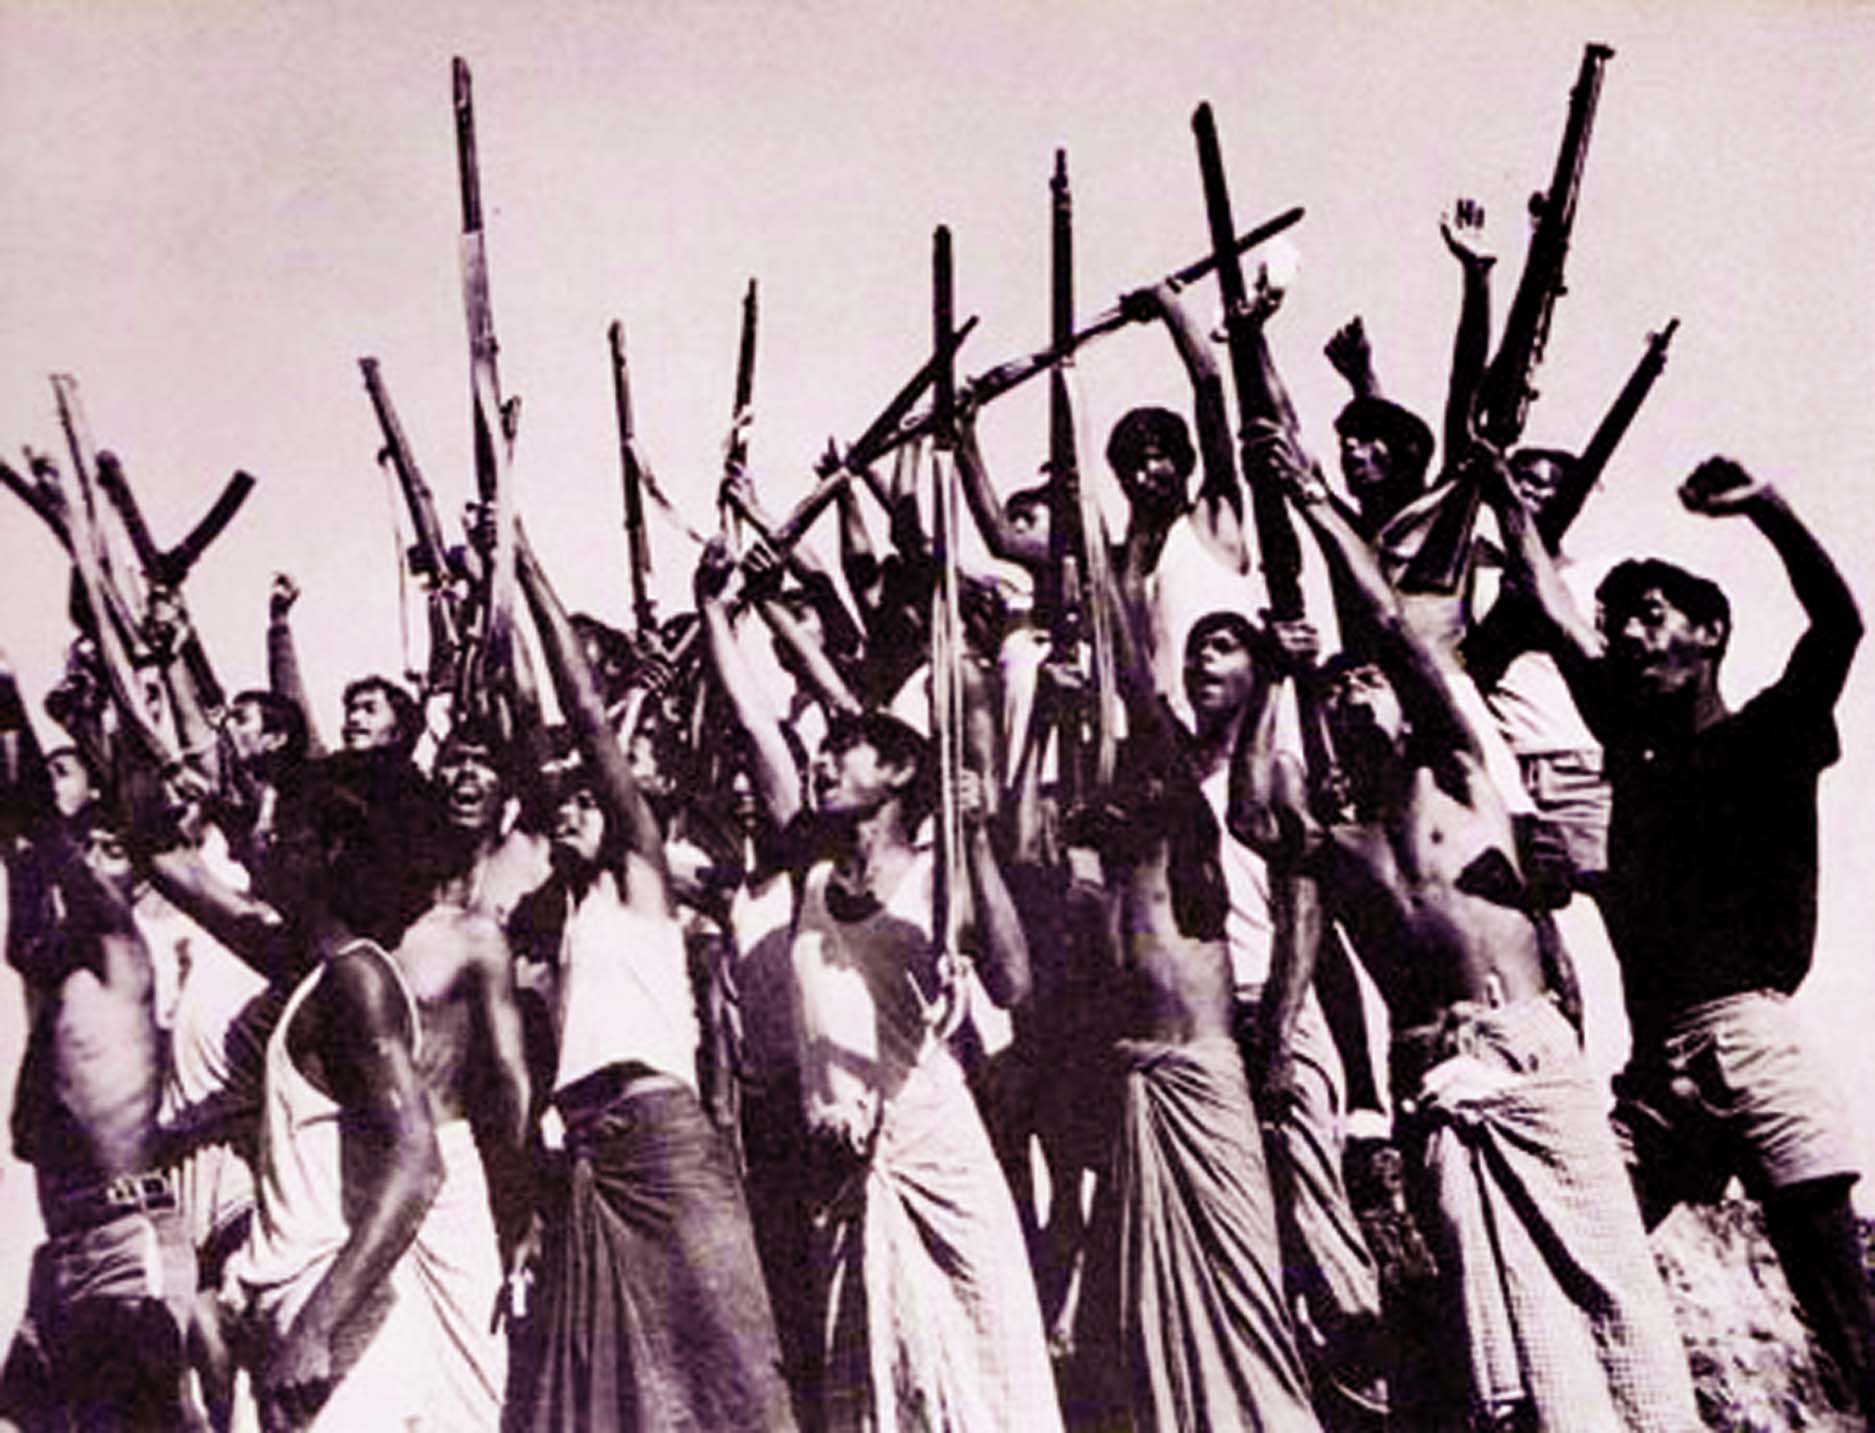 Liberation War 1971 Bangladesh Cover Image